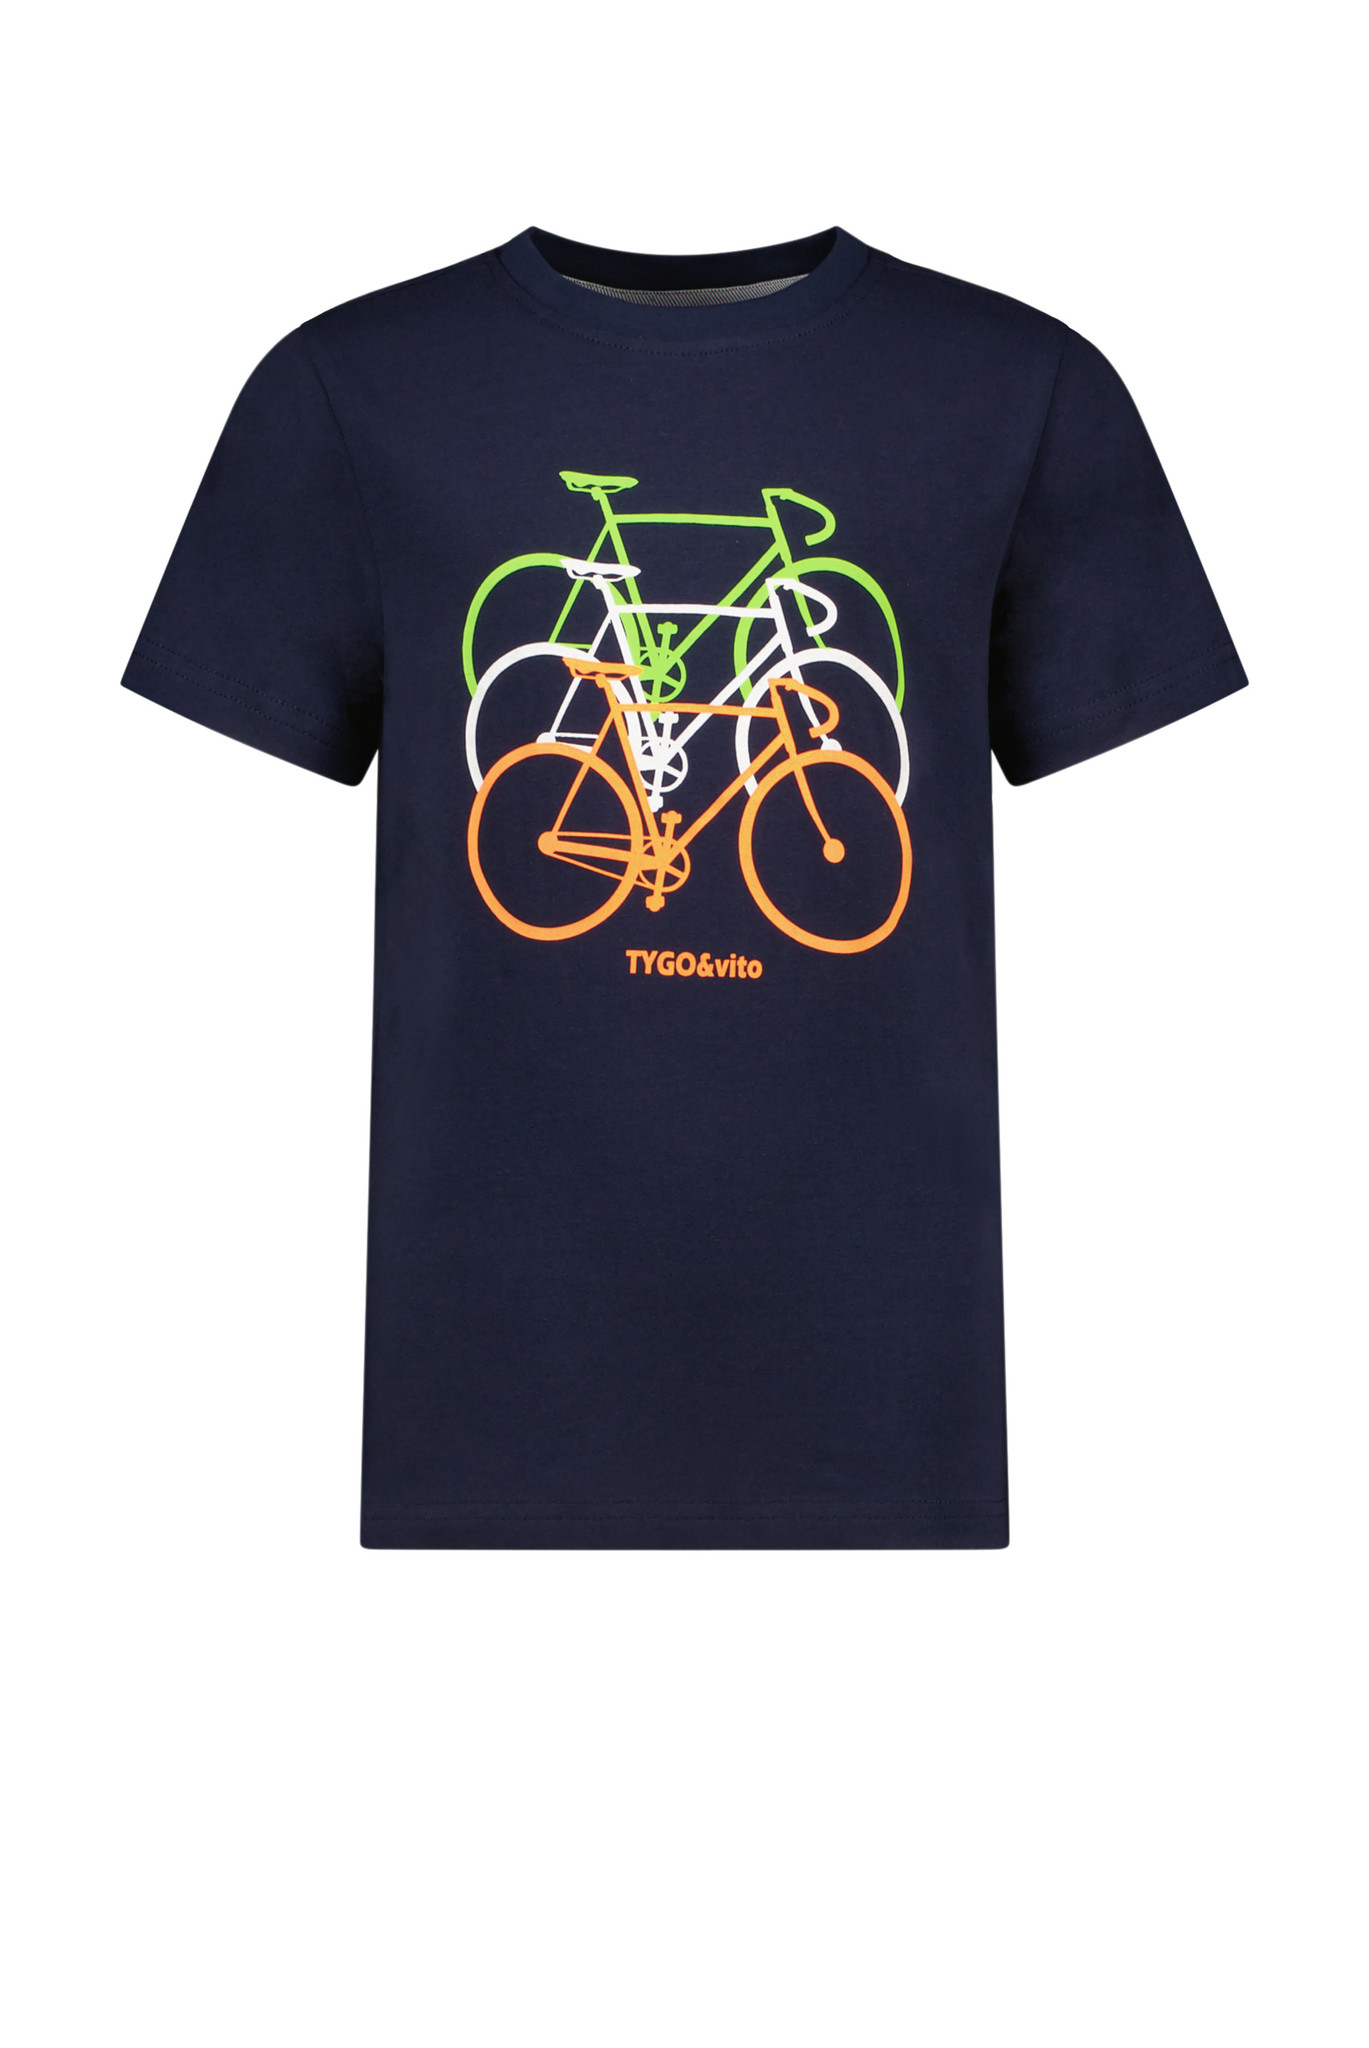 Tygo & Vito Jongens t-shirt bikes - Navy blauw